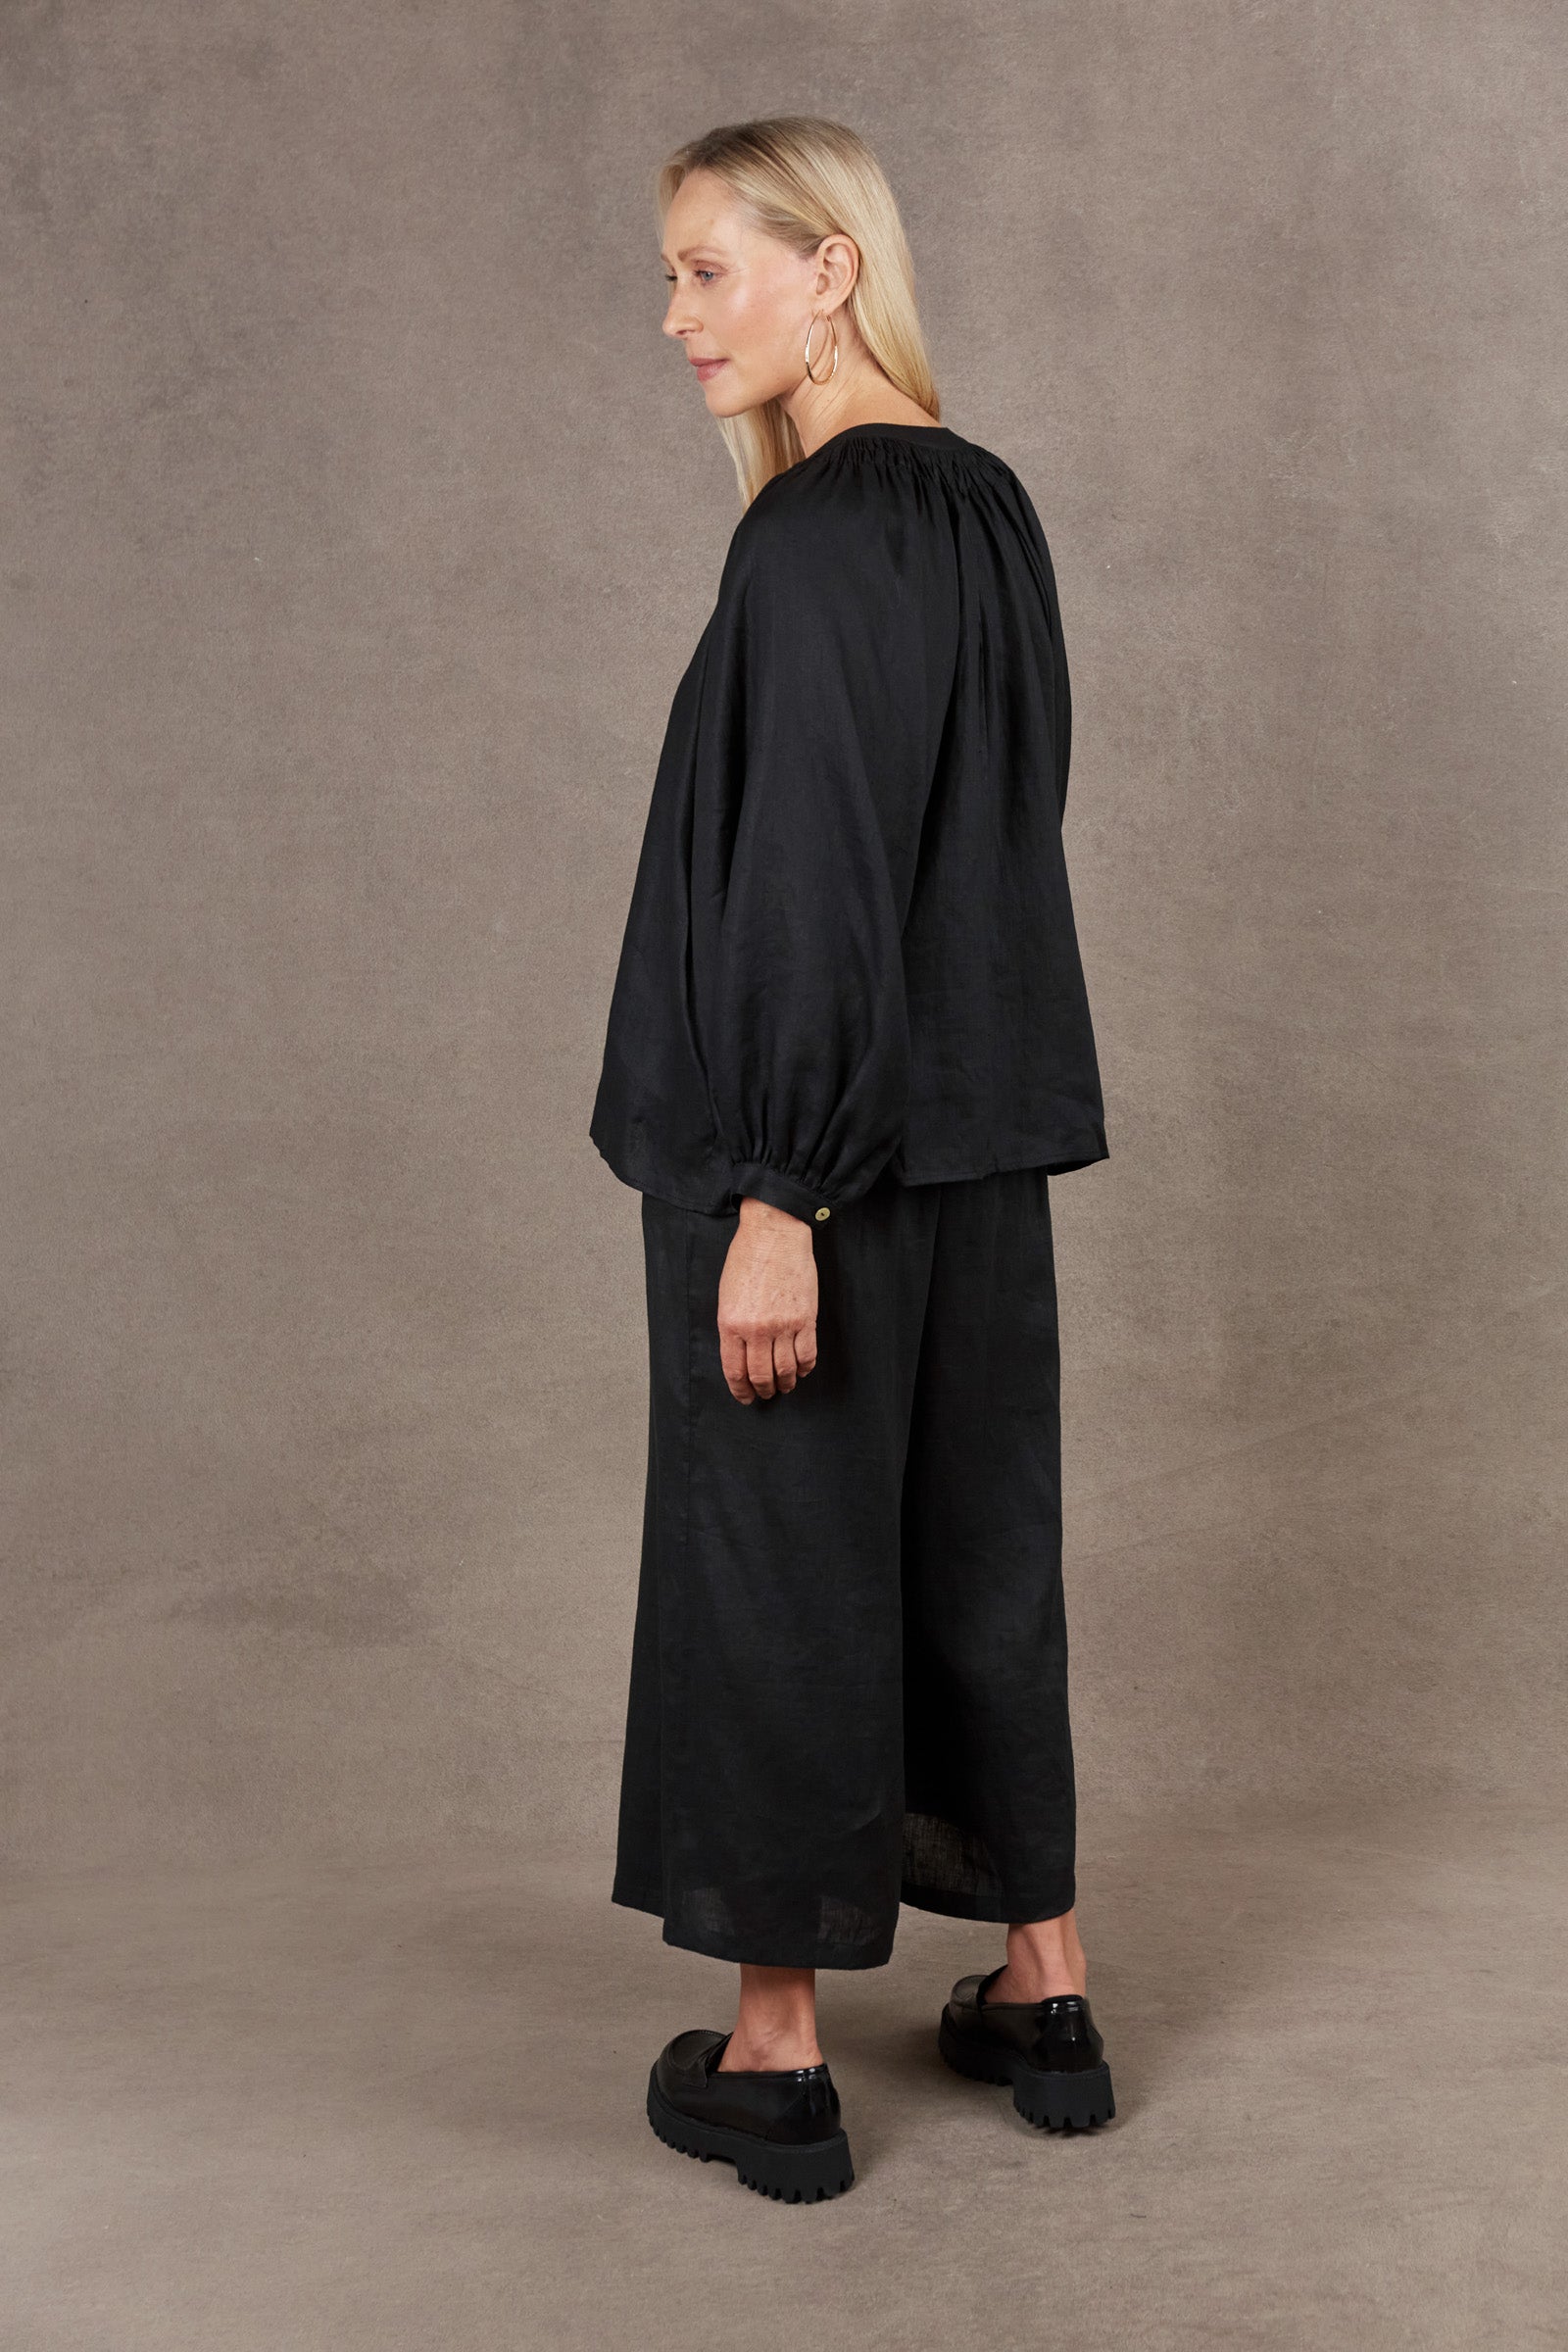 Nama Blouse - Ebony - eb&ive Clothing - Top 3/4 Sleeve Linen